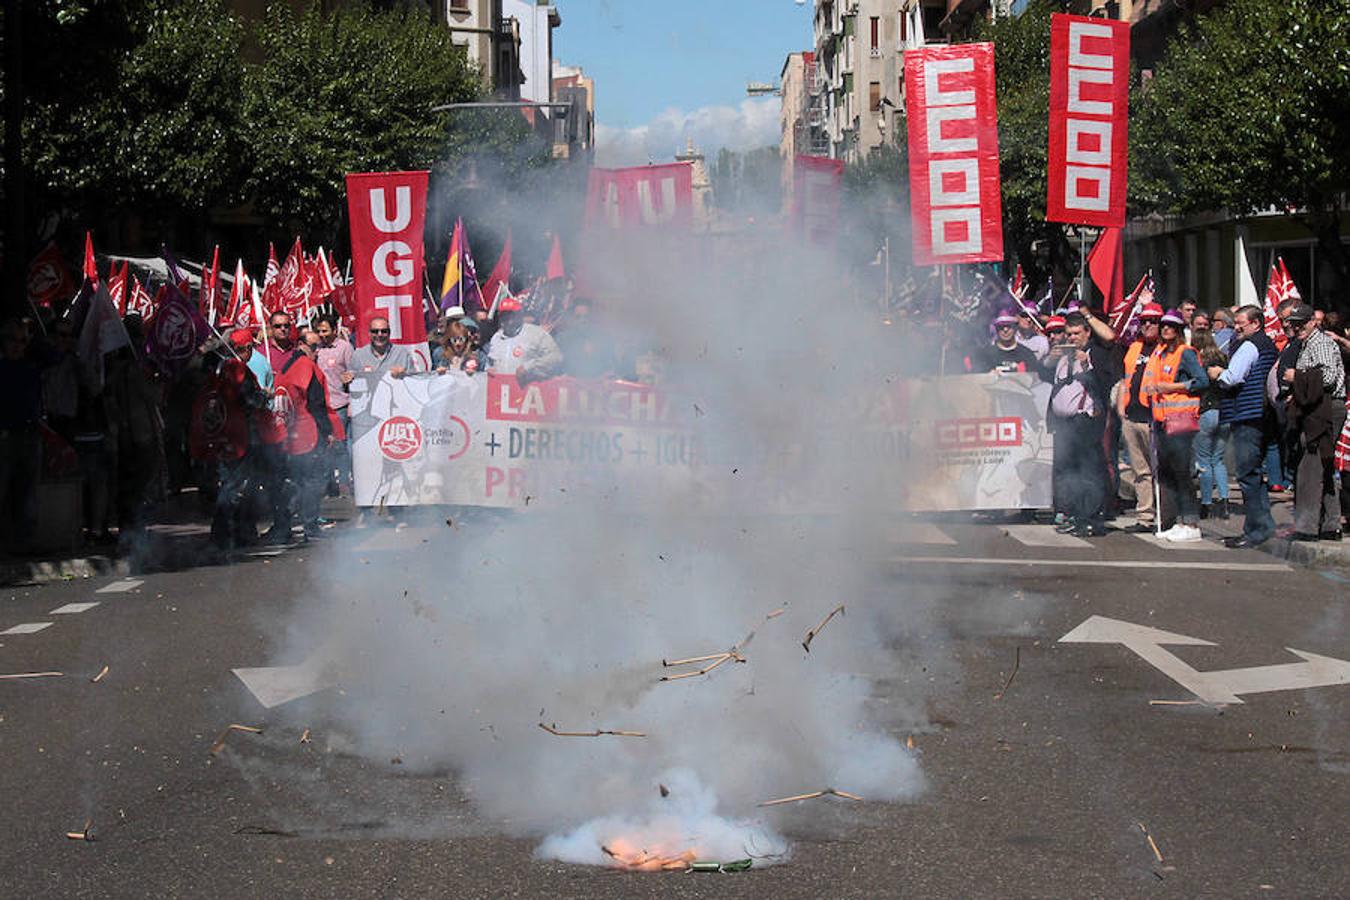 Sindicatos, partidos políticos y colectivos salen a la calle en León capital este 1 de Mayo para celebrar y reivindicar en el Día del Trabajador, con esperanza en la victoria socialista pero con recelos sobre posibles pactos con el liberalismo